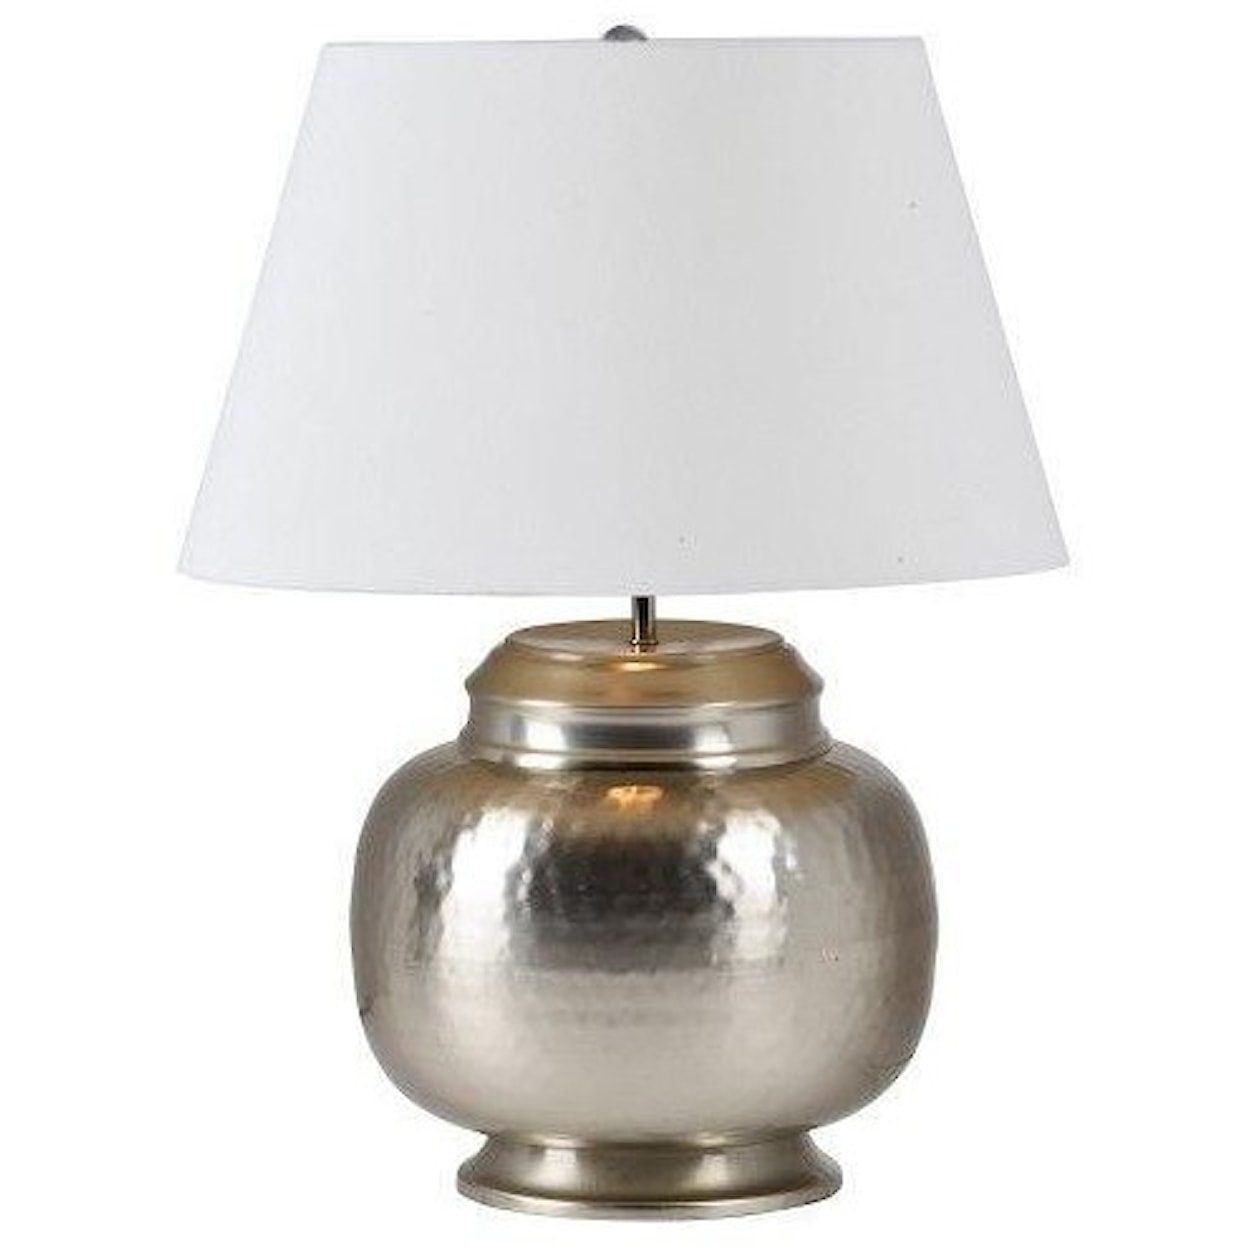 Ren-Wil Lamp Table Lamp